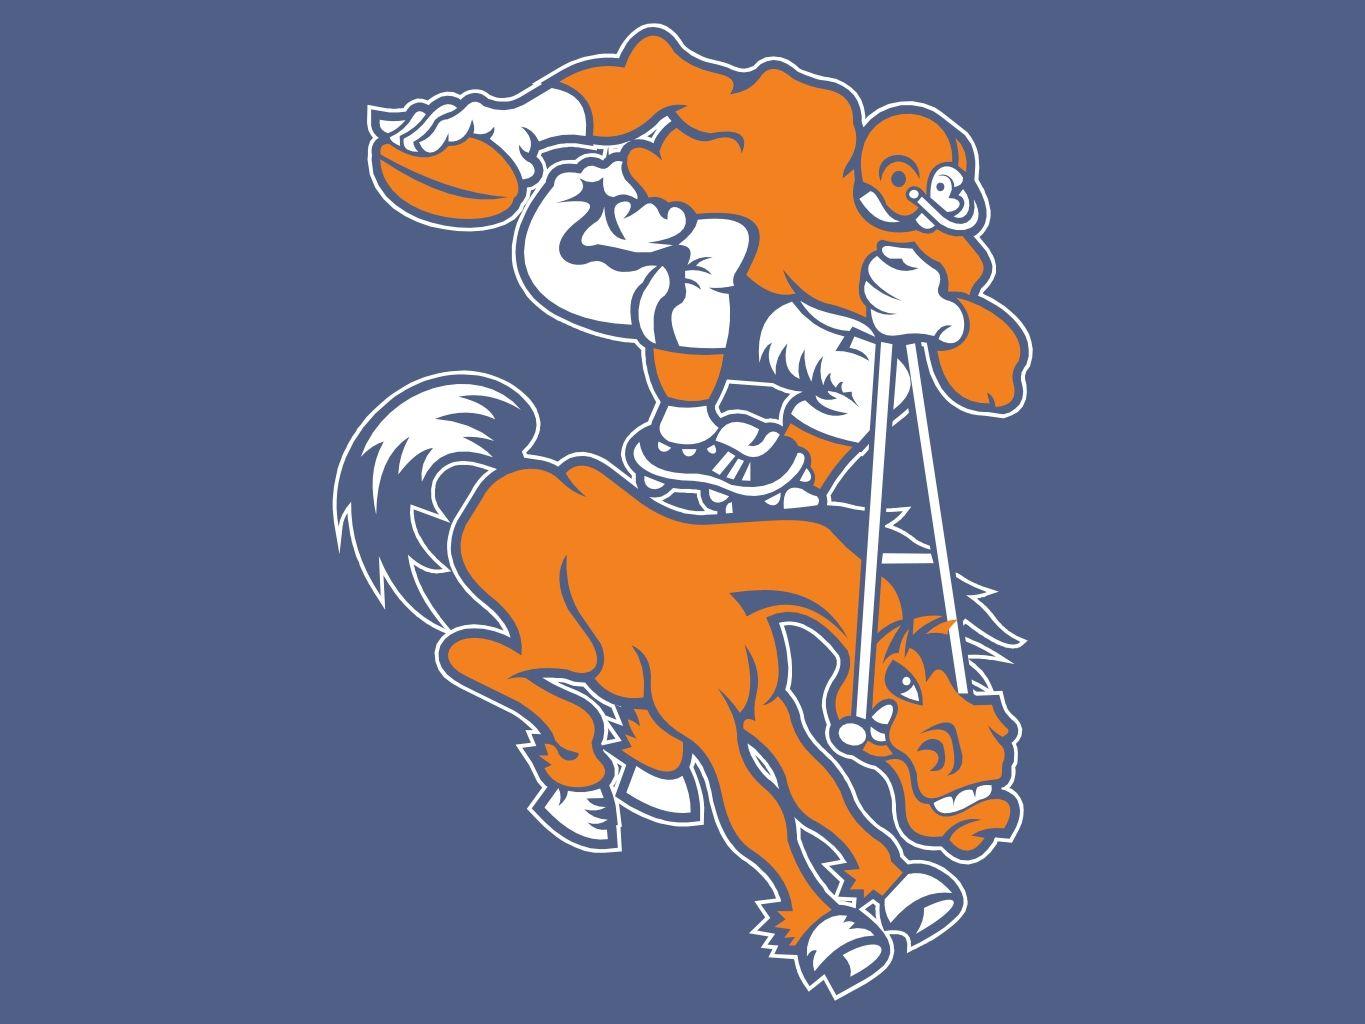 Denver Broncos Old Logo - Denver Broncos Old Logo N2 free image